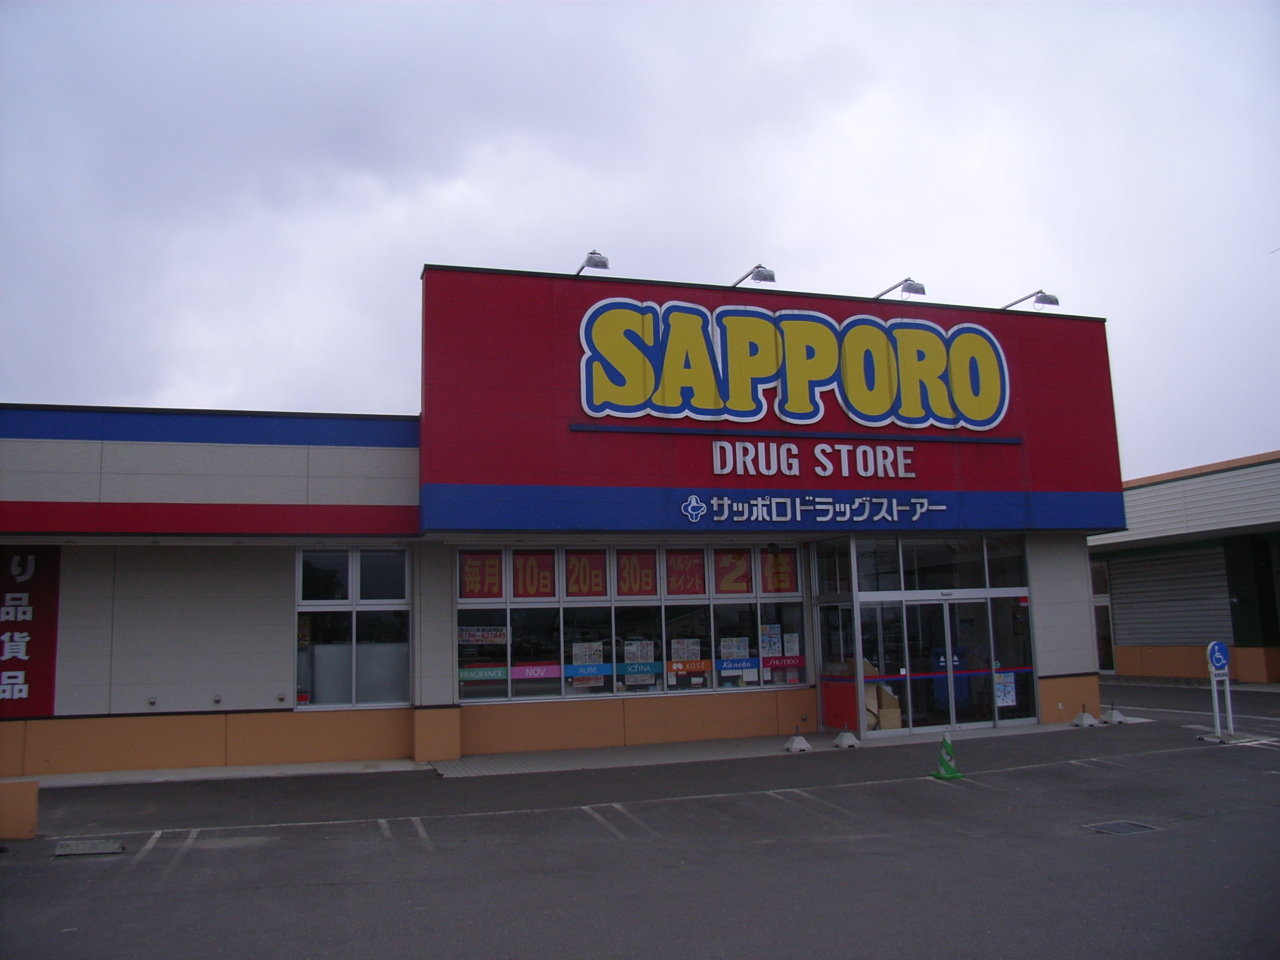 Dorakkusutoa. Sapporo drugstores Nanae shop 237m until (drugstore)